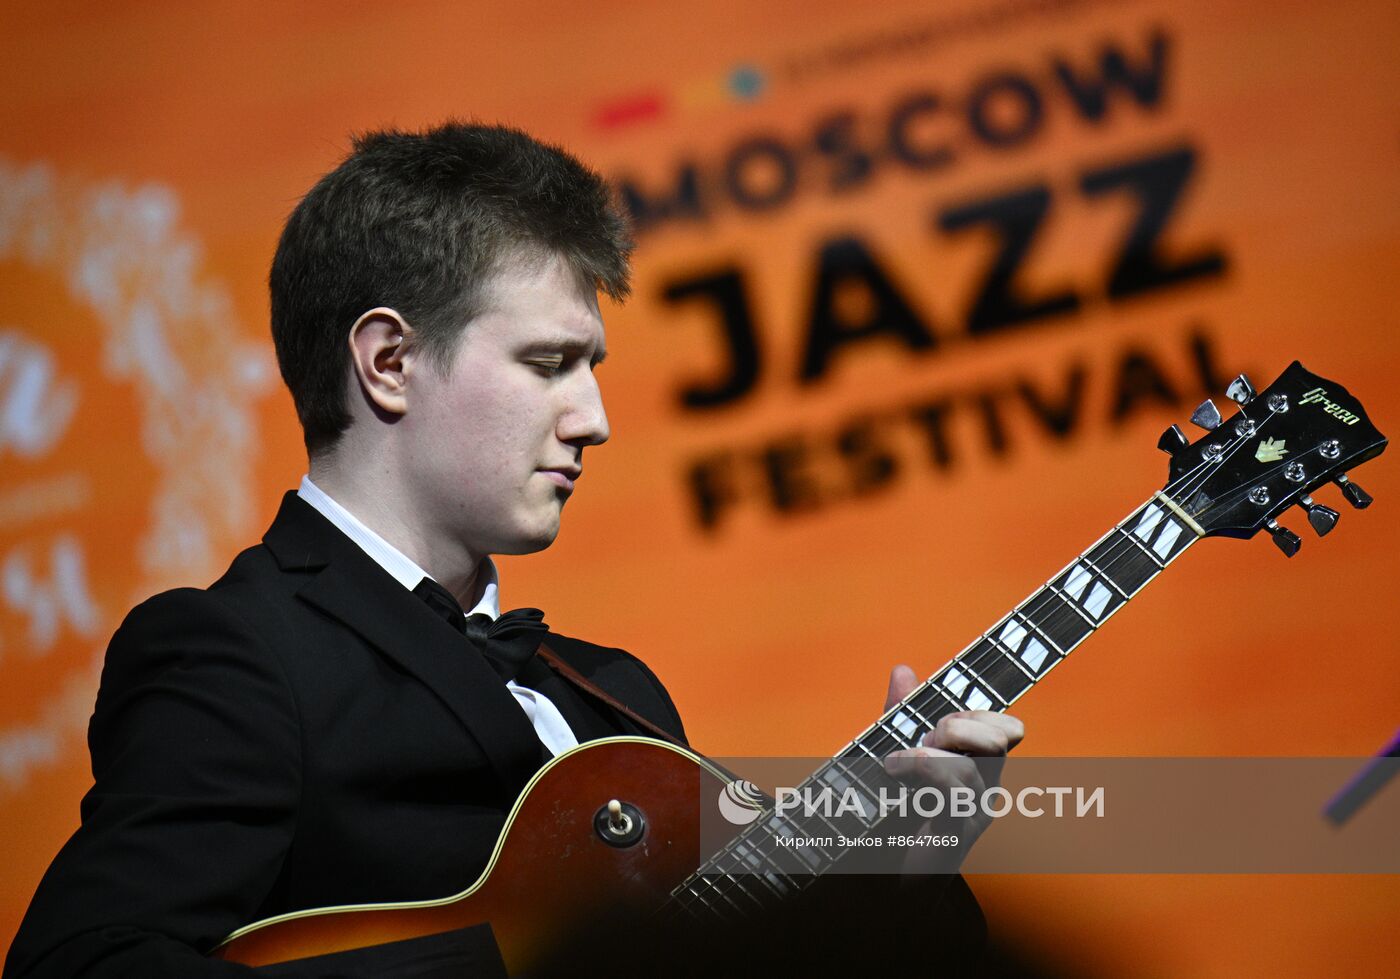 Выставка "Россия". Специальная концертная программа в рамках презентации Moscow Jazz Festival